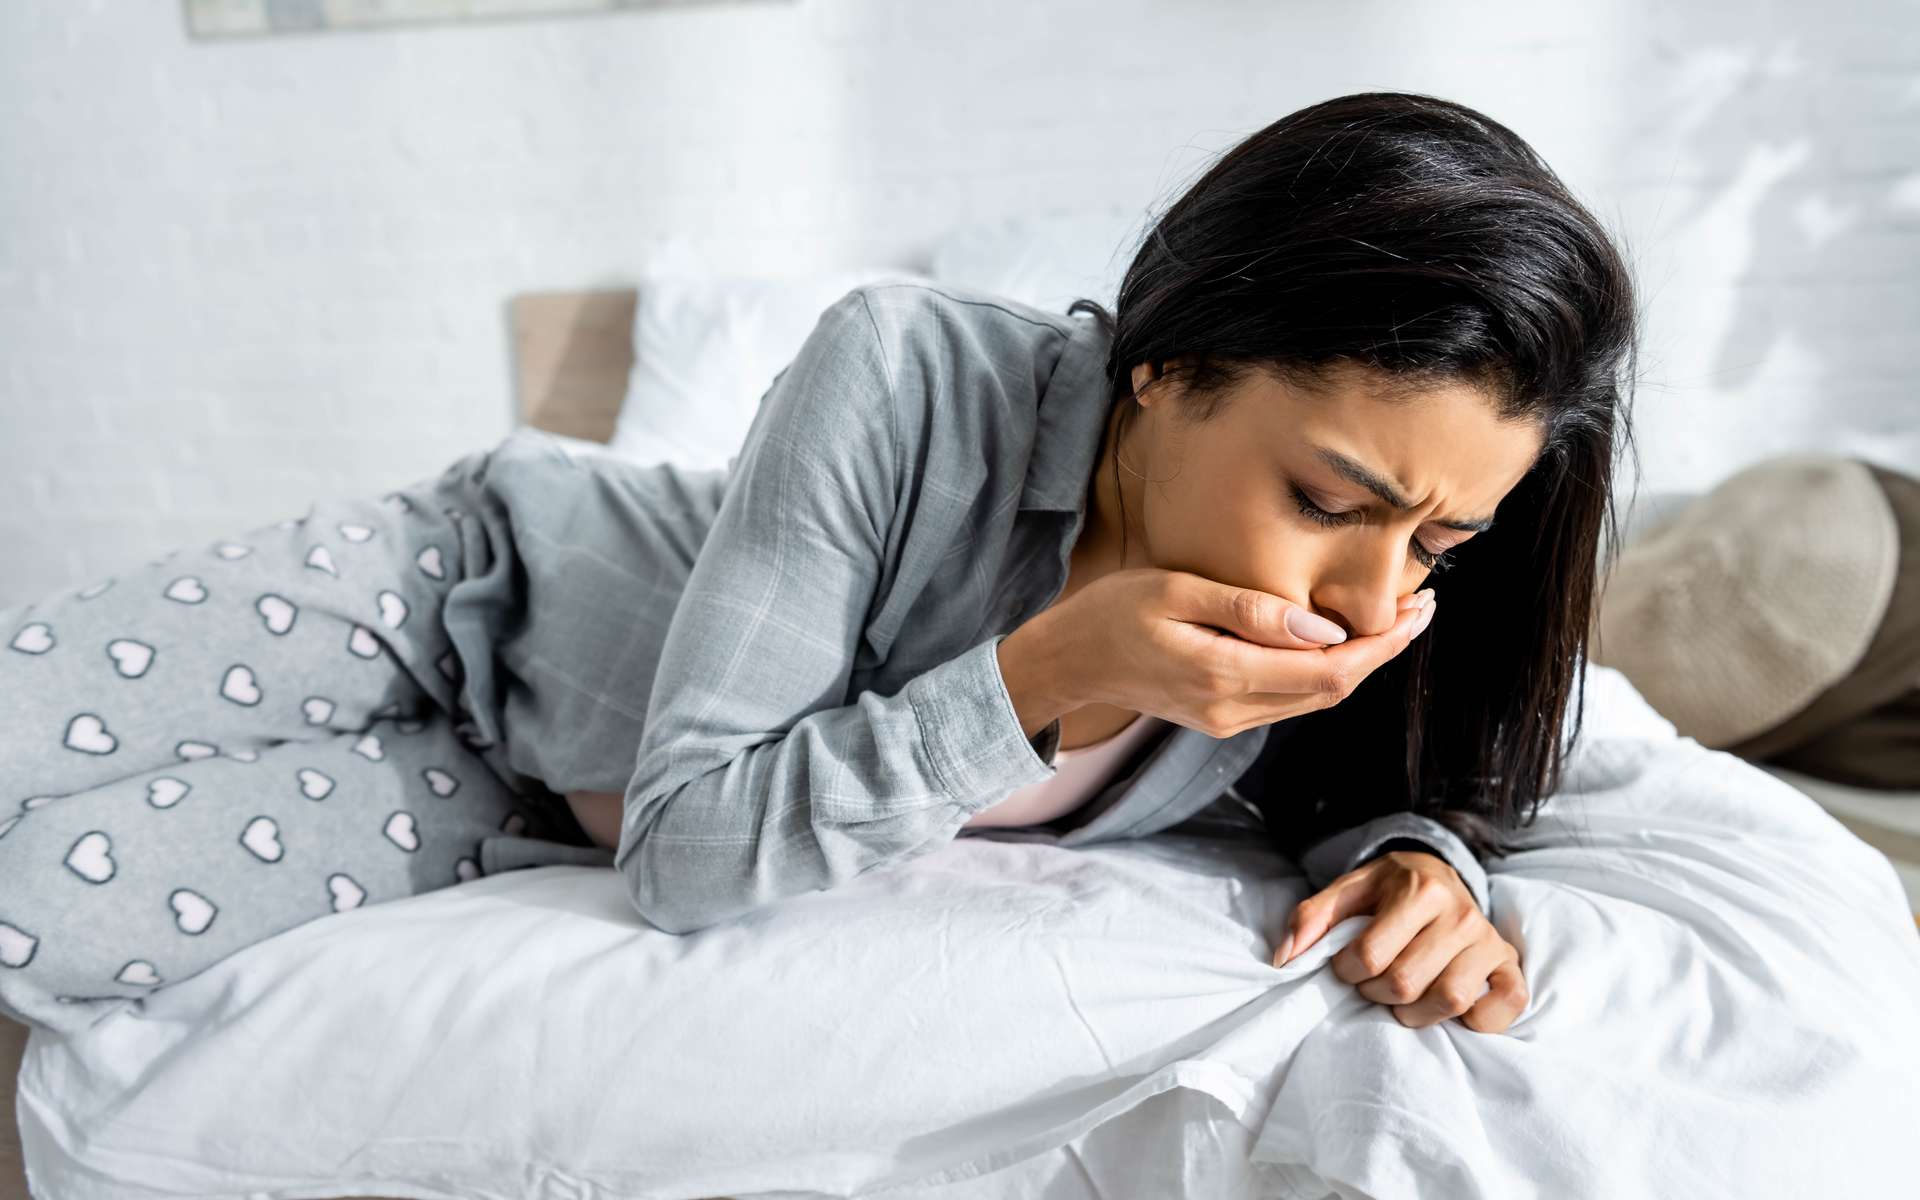 Cerveau : d'où vient le réflexe de vomir quand on est malade ?